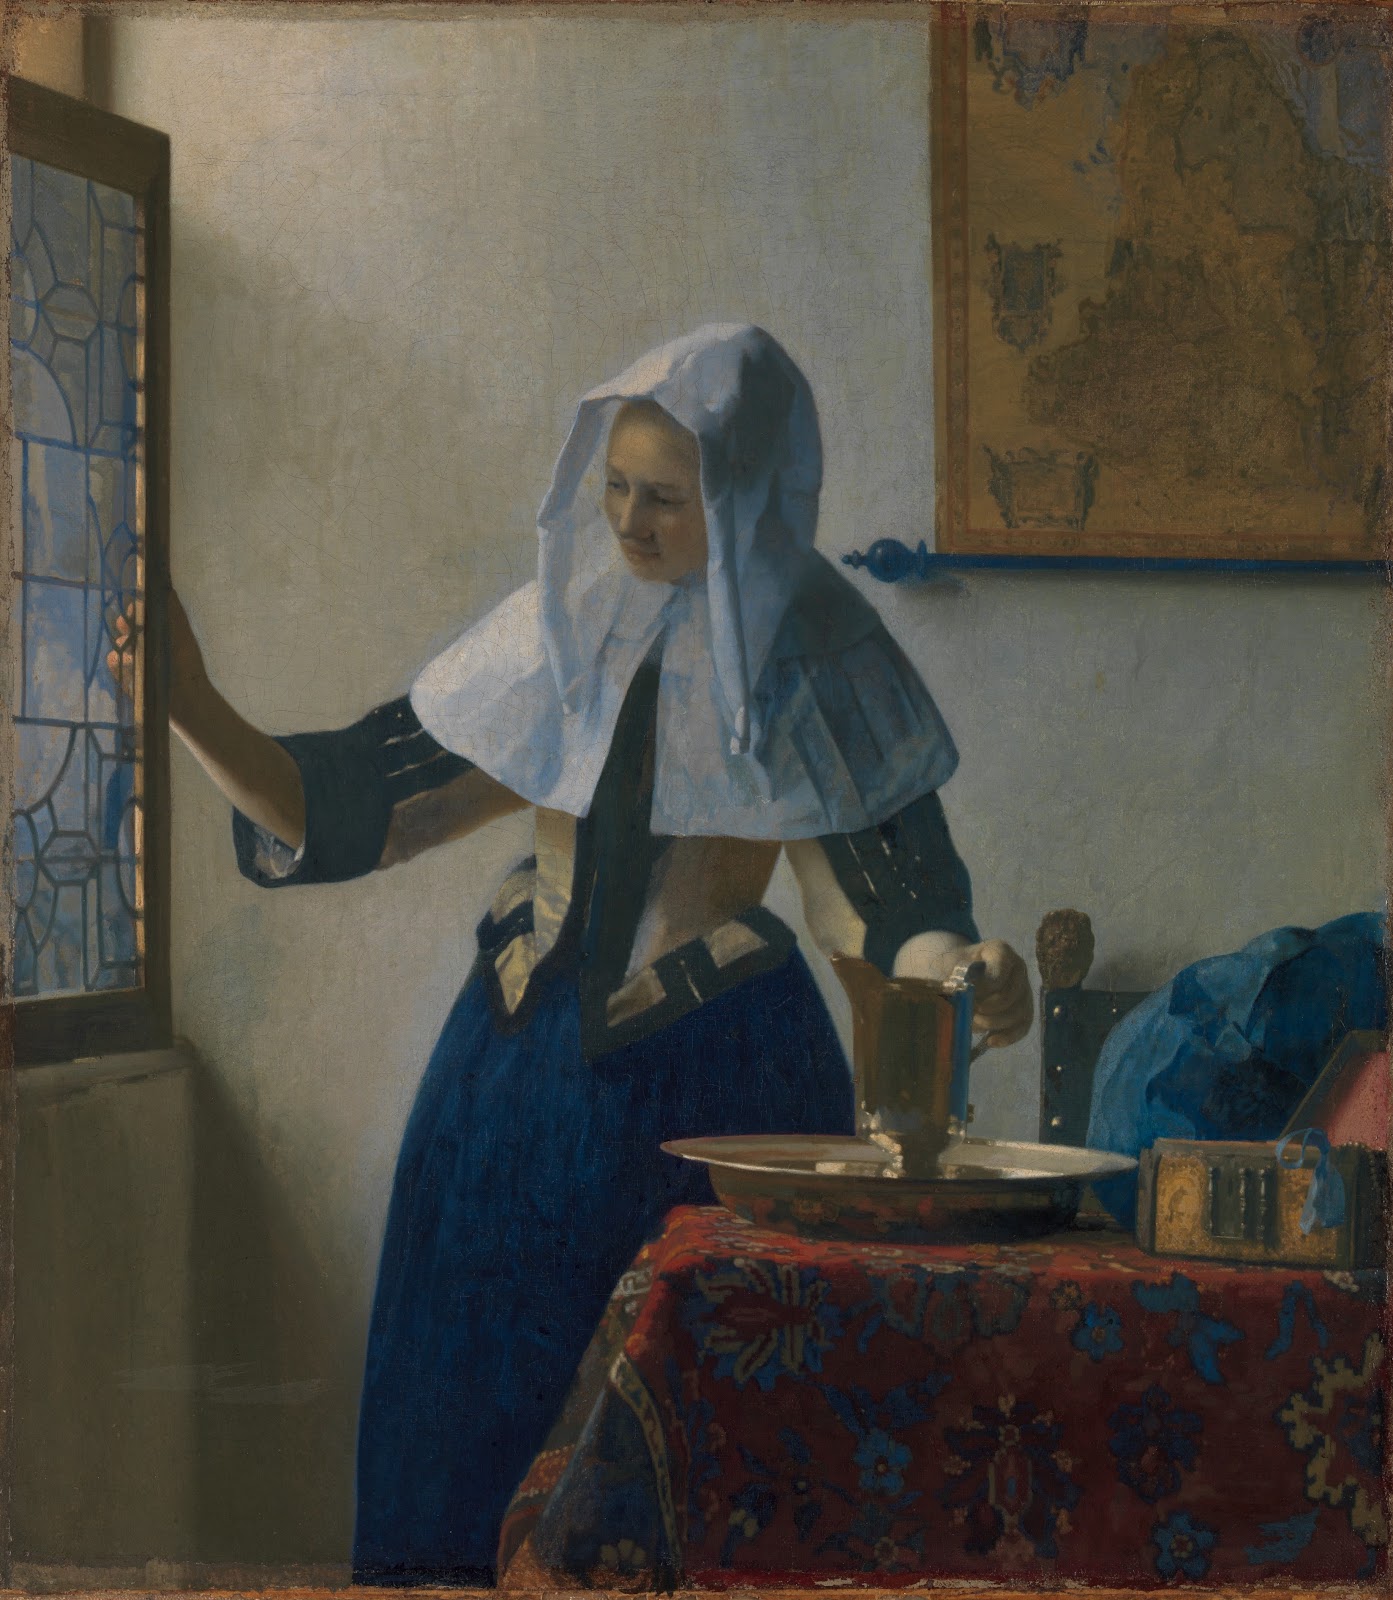 Johannes+Vermeer-1632-1675 (122).jpg